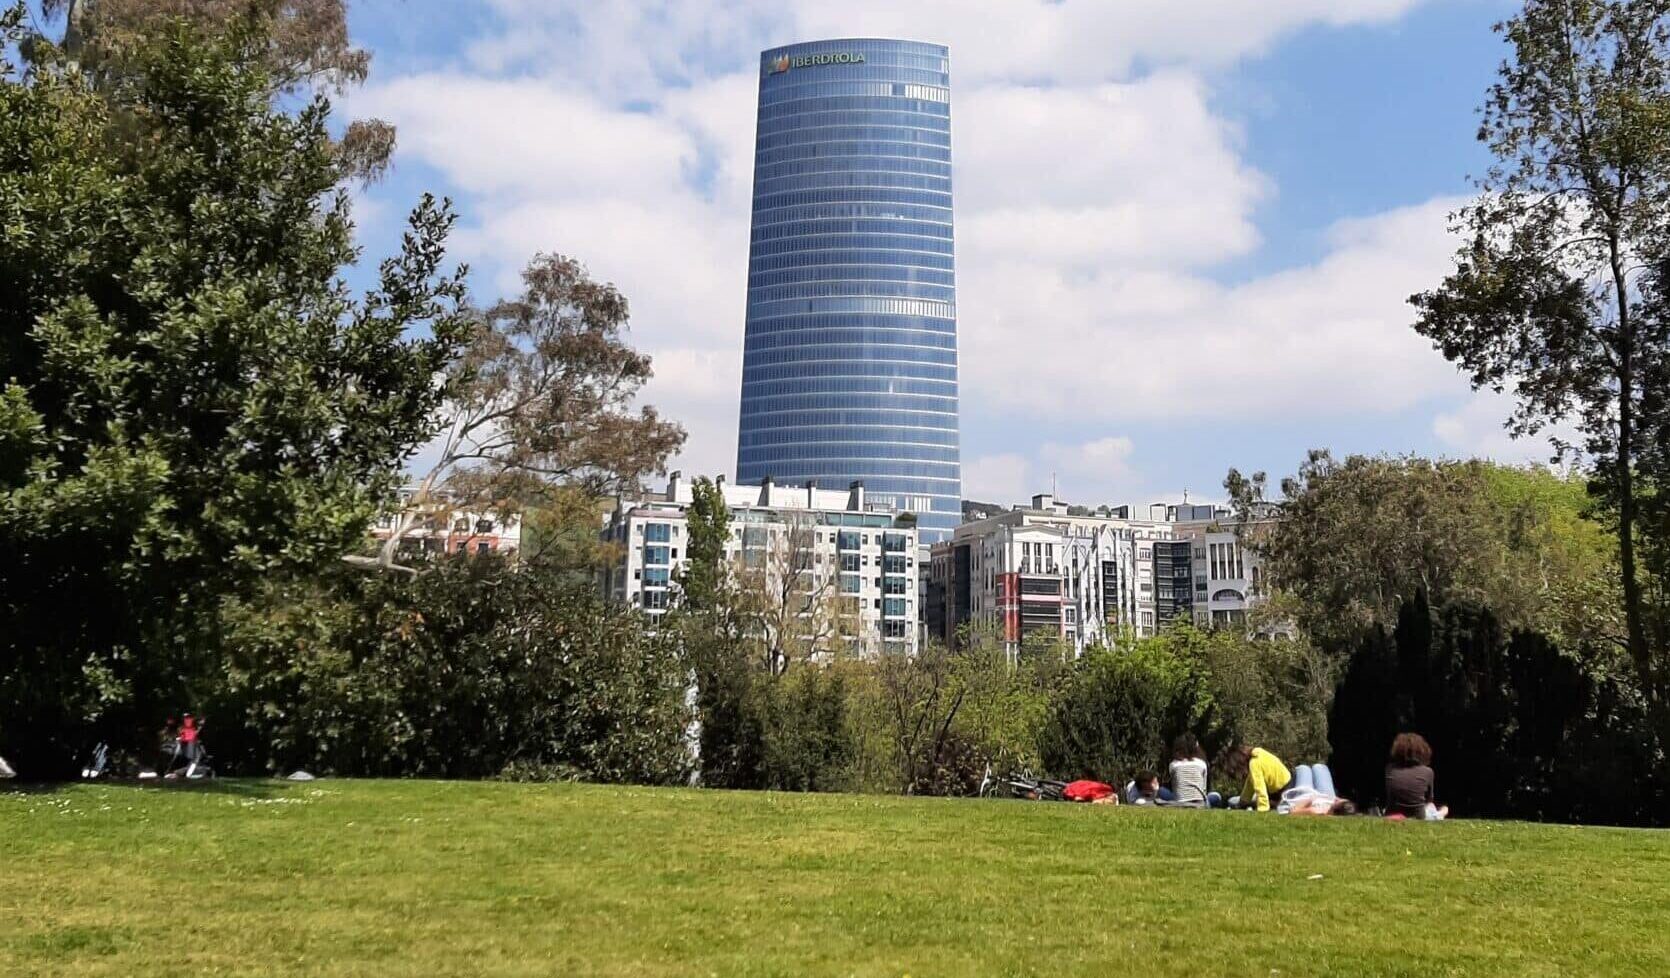 La 'Torre Iberdrola', el edificio más alto de Euskadi, con 41 plantas y 165 metros de altura.